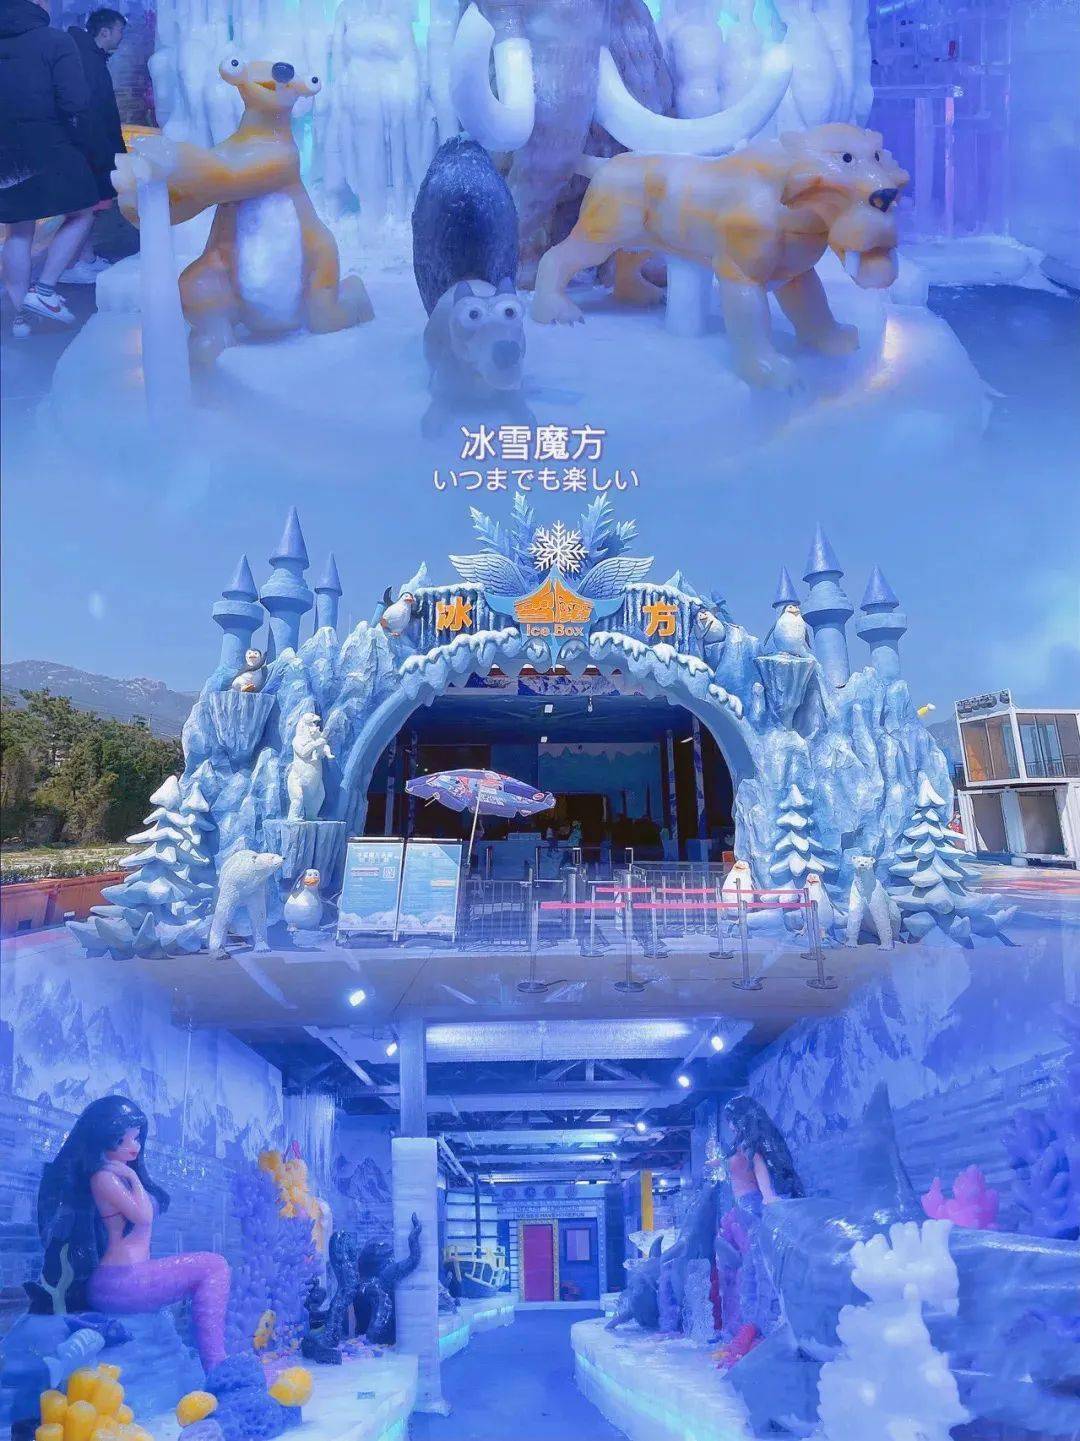 主题打造的室内冰雪游乐世界,「青岛冰雪魔方乐园」全部采用真冰真雪